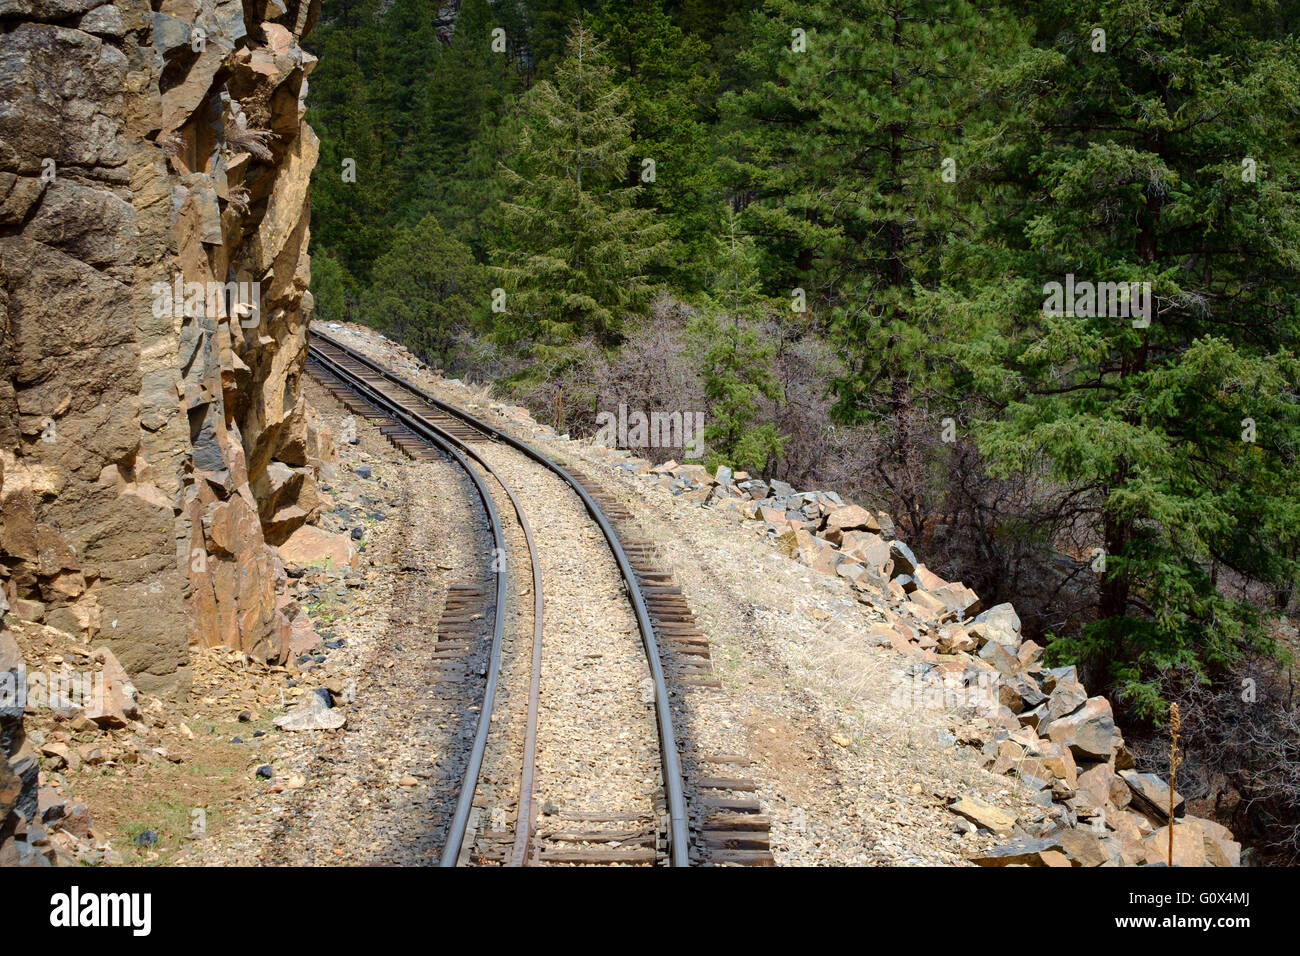 Vue sur la voie ferrée, Durango Silverton Narrow Gauge steam railway, Colorado, USA Banque D'Images